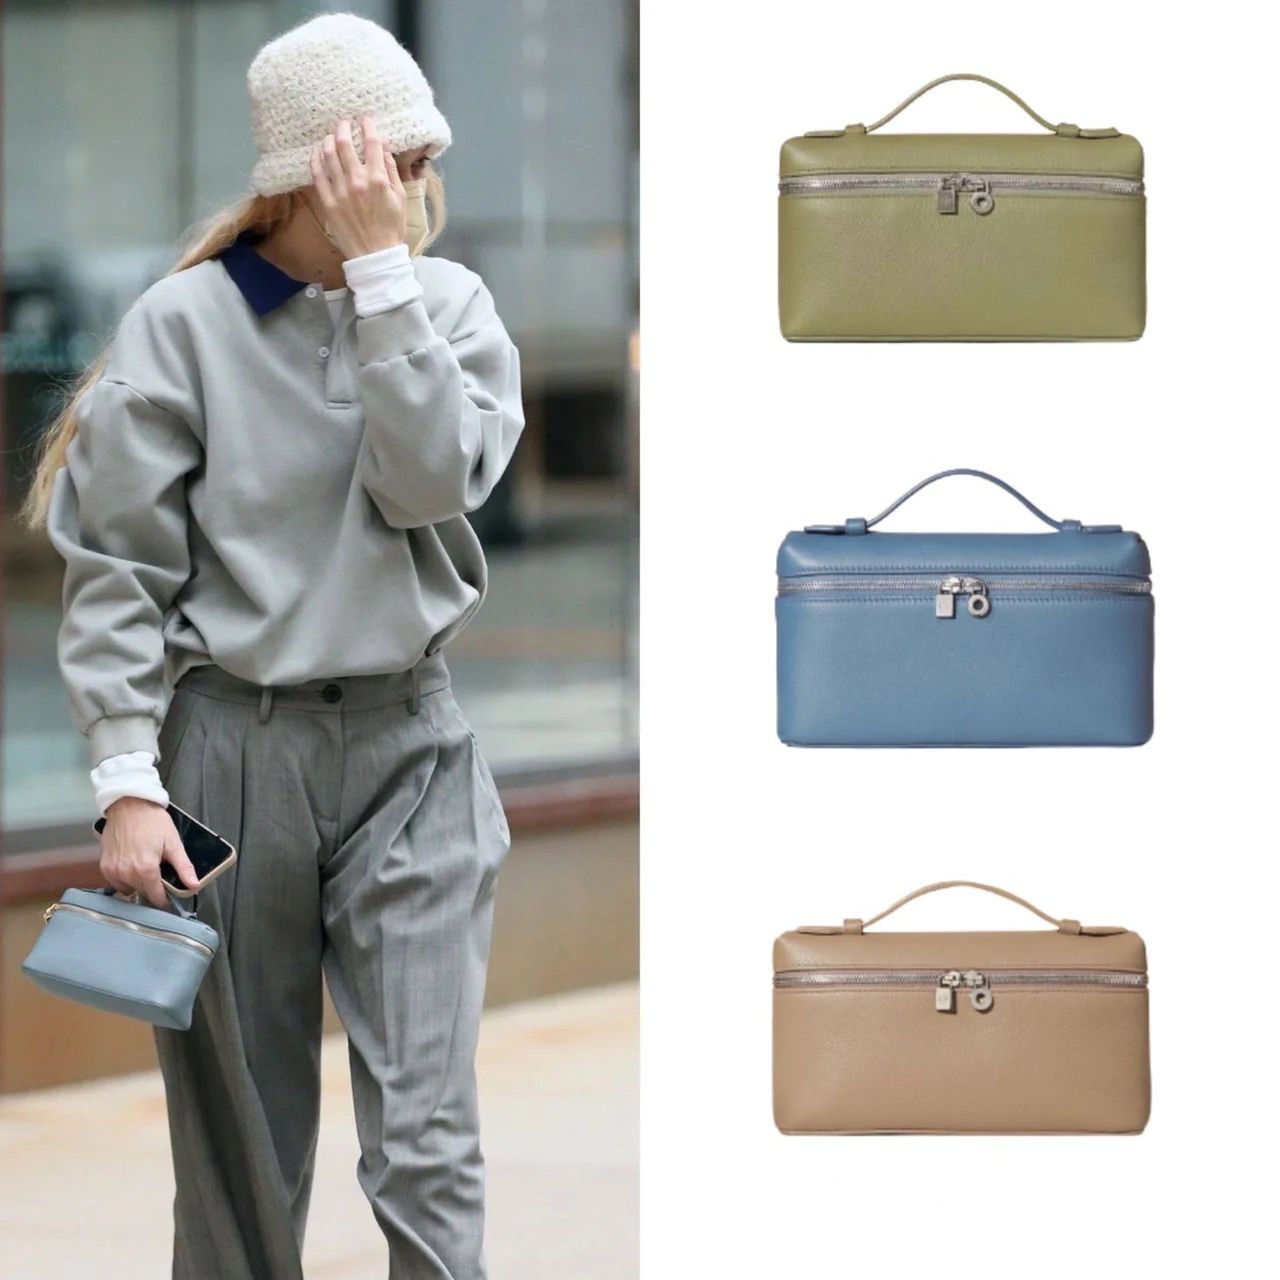 Shop Loro Piana Extra Bag L27 Leather Shoulder Bag